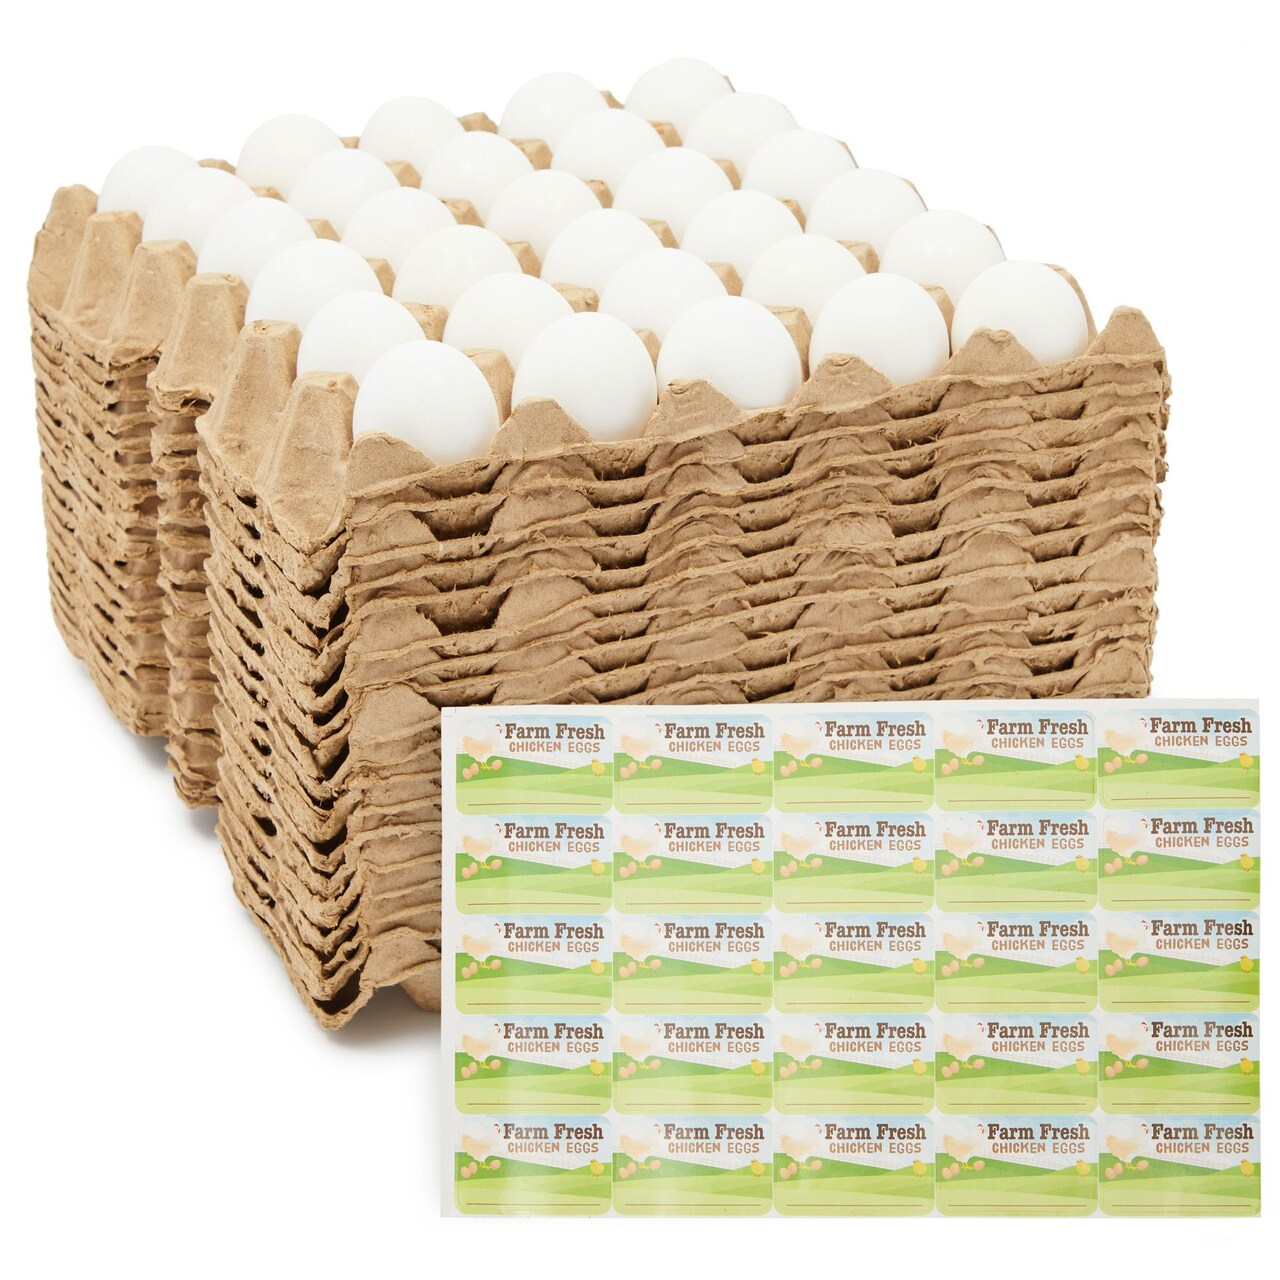 18 Pack Bulk Egg Cartons for 30 Chicken Eggs, Reusable Brown Paper